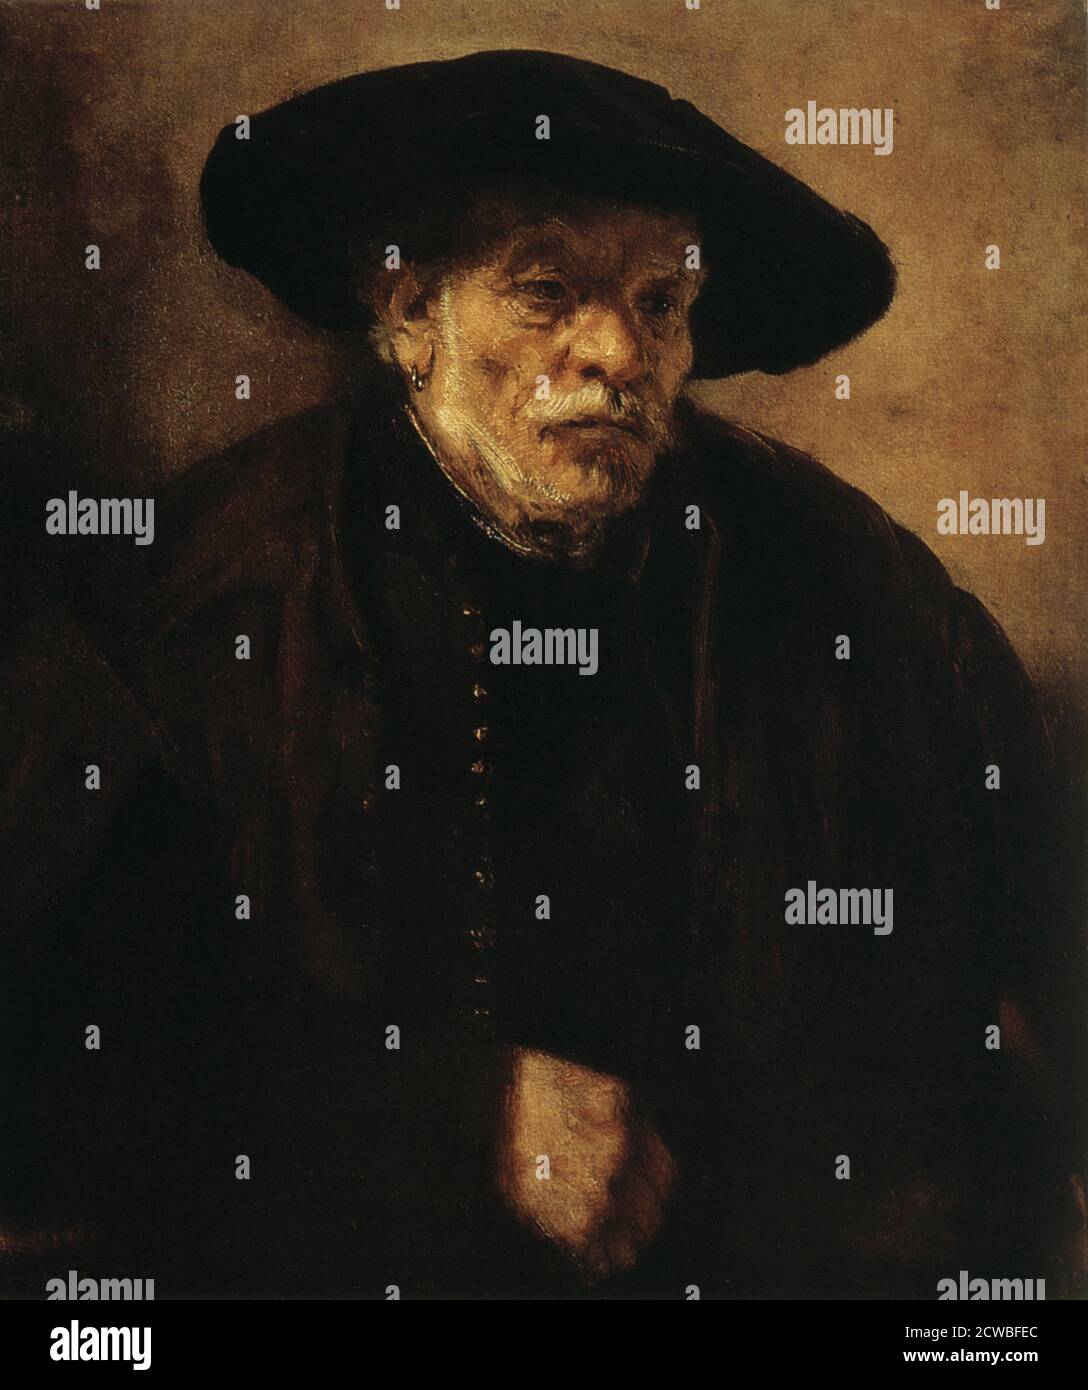 Ritratto del fratello di Rembrandt, Adrien van Rijn'(?), di Rembrandt Harmensz van Rijn, 1654. Dal Museo di Belle Arti di Pushkin, Mosca, Russia. Foto Stock